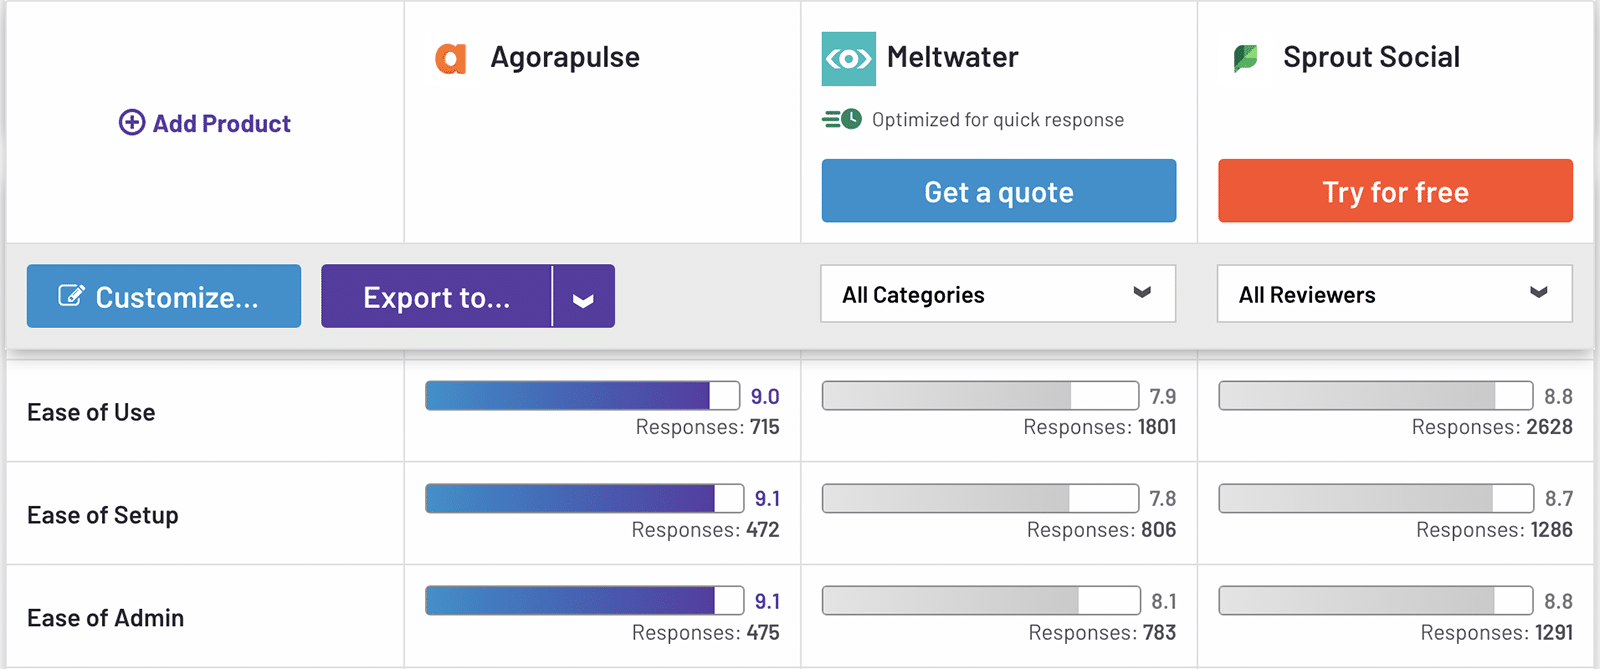 Comparaison G2 Agorapulse, Meltwater, et Sprout Social